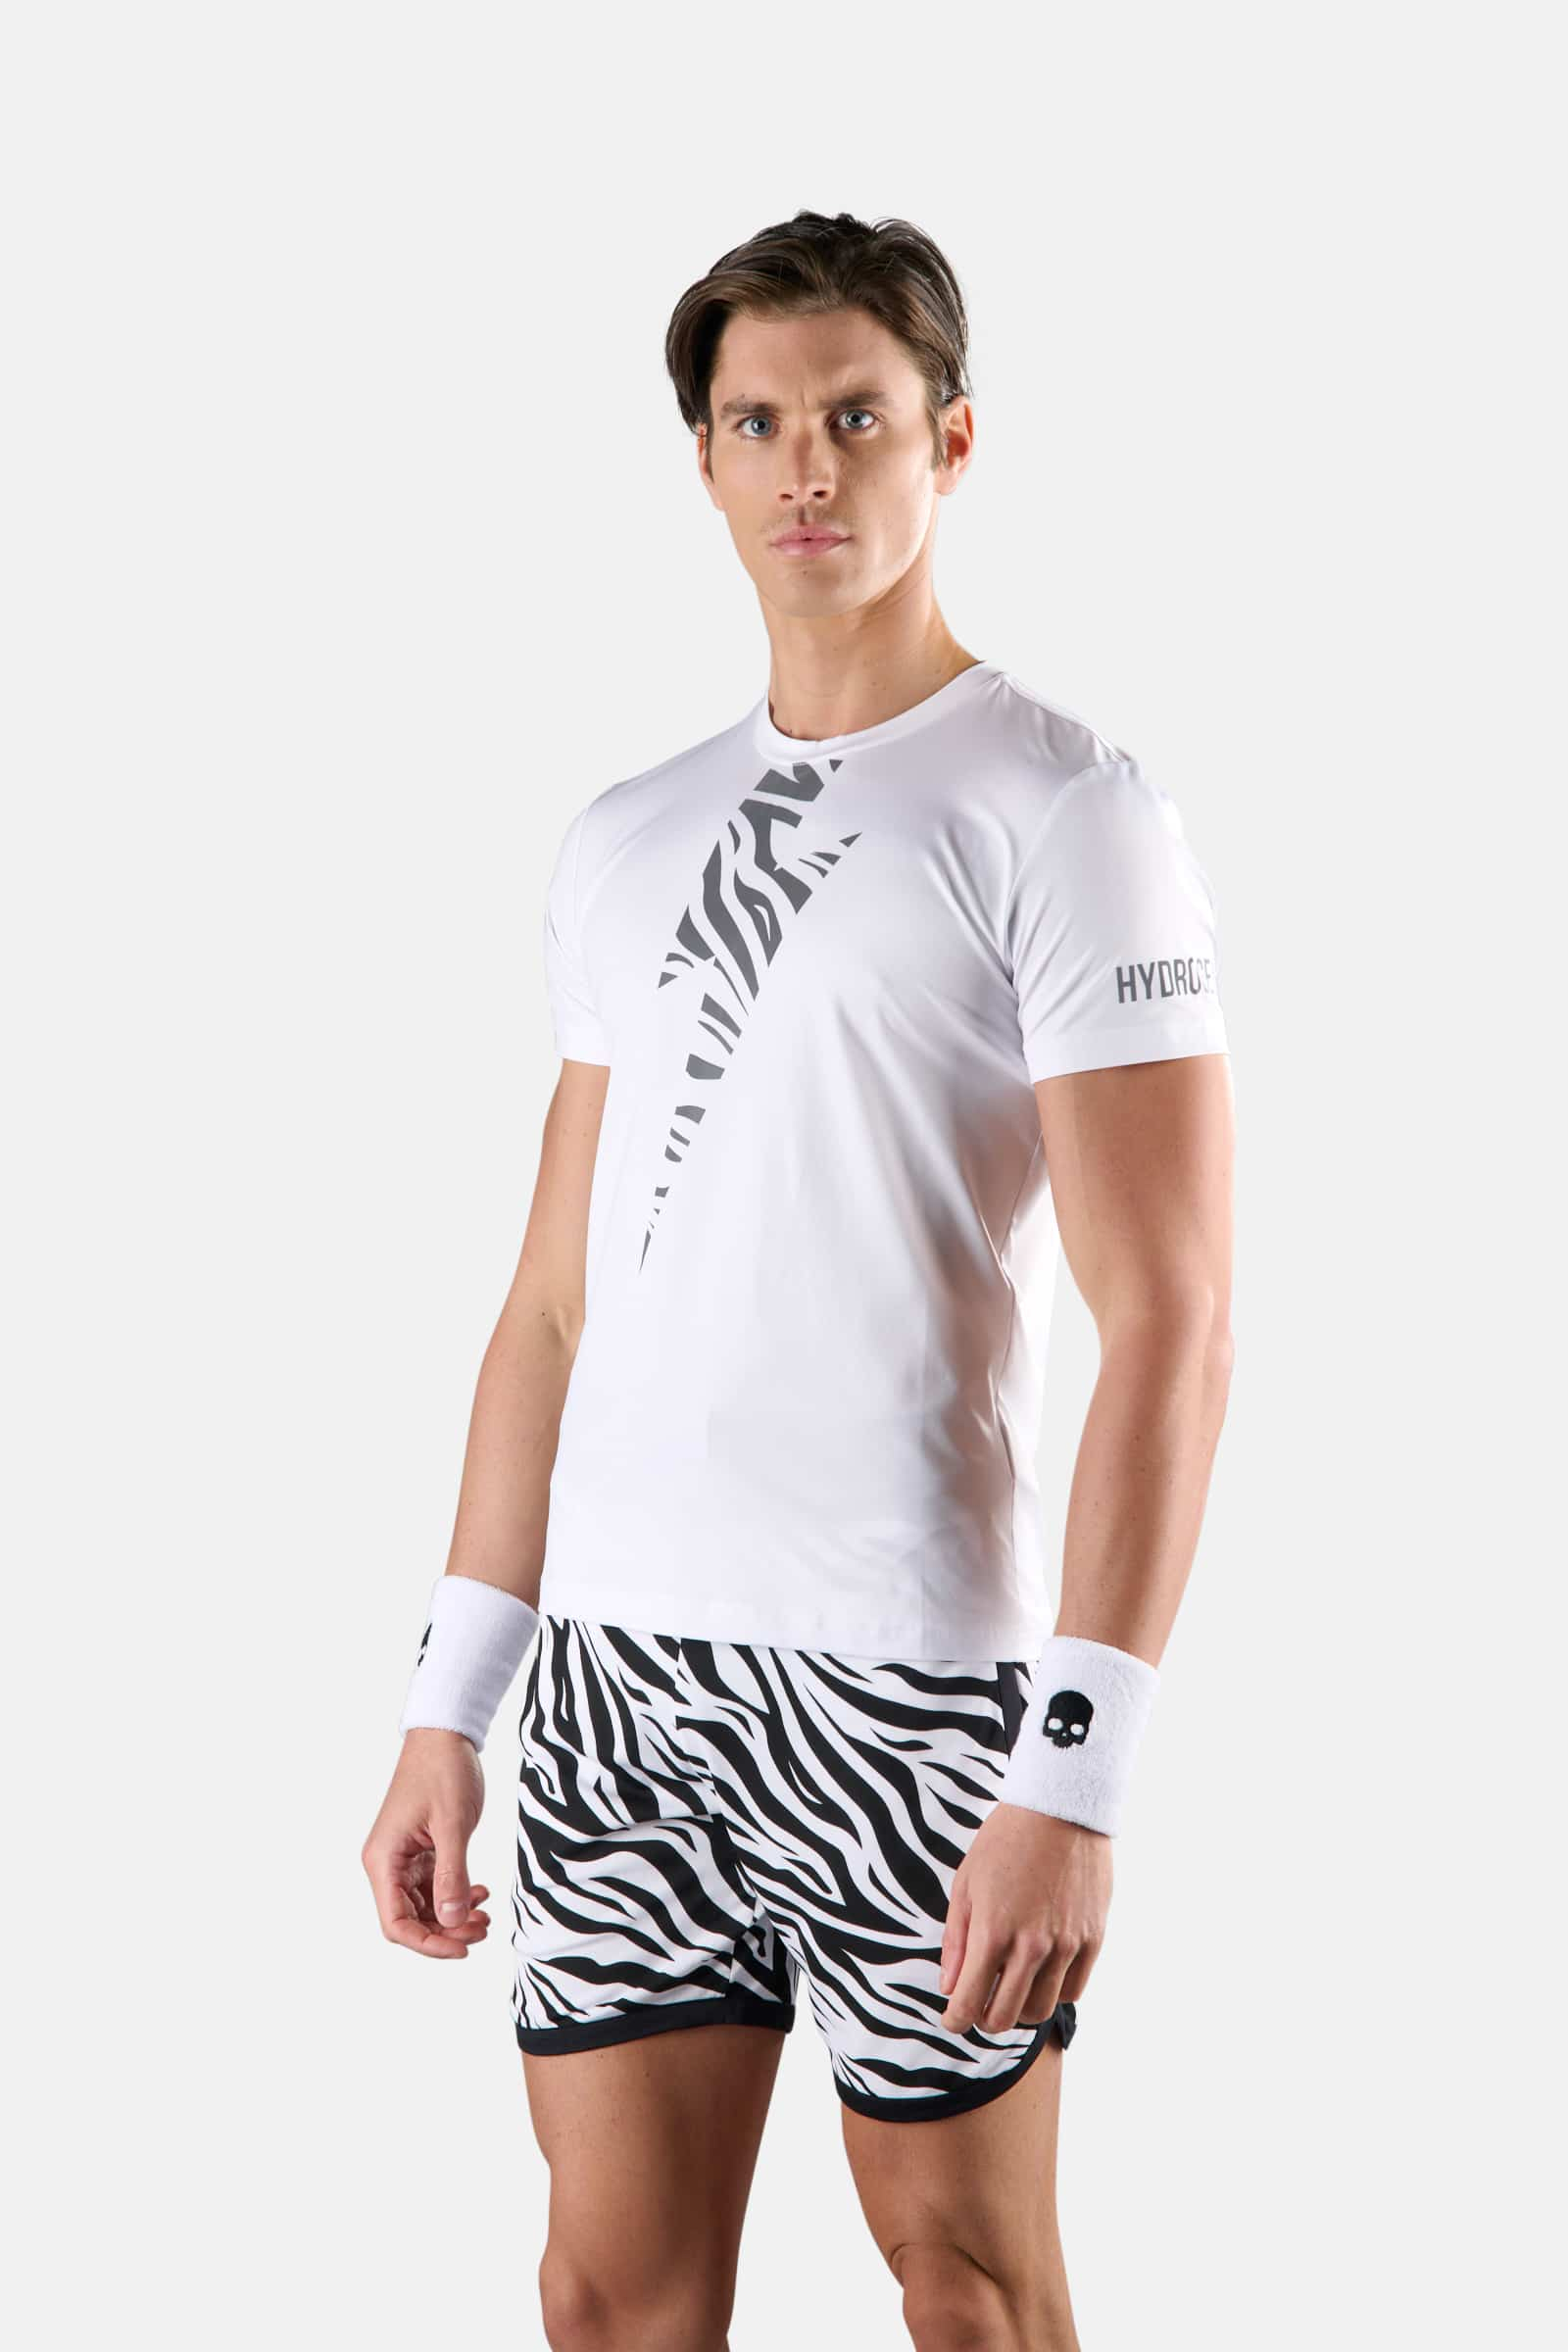 TIGER TECH TEE - WHITE,SILVER - Hydrogen - Luxury Sportwear